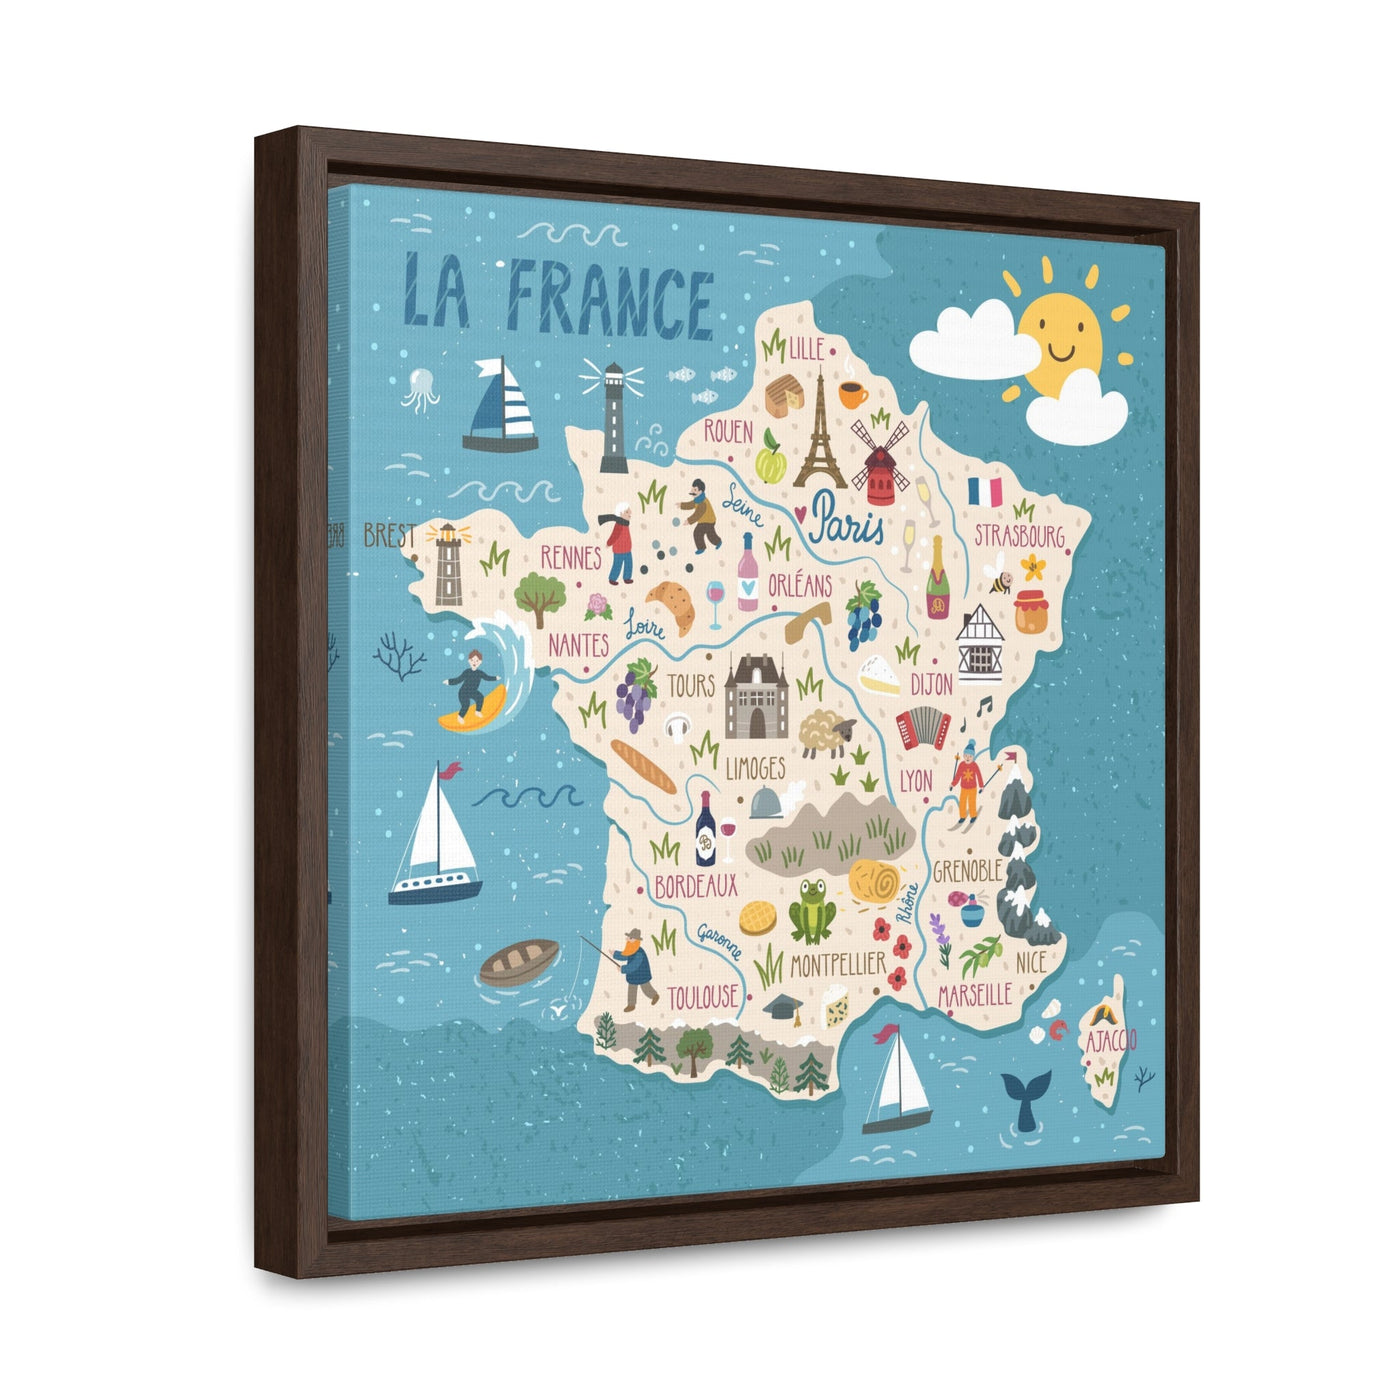 France Stylized Map Framed Canvas - Ezra's Clothing